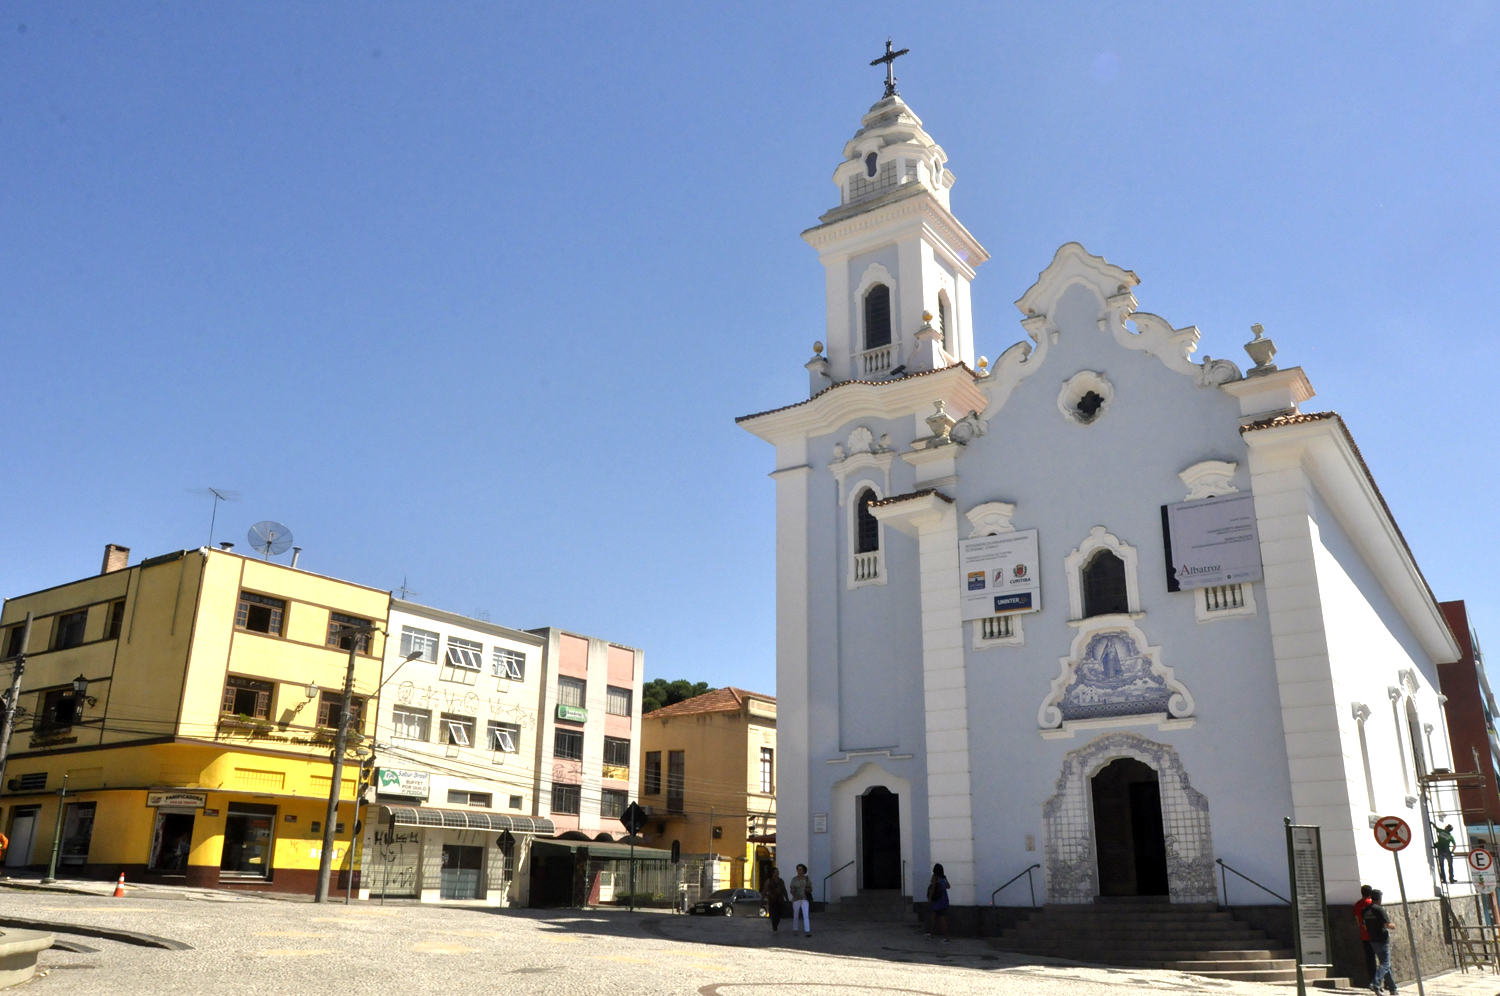 Festa da Igreja do Rosário pode constar no Calendário Oficial de Eventos